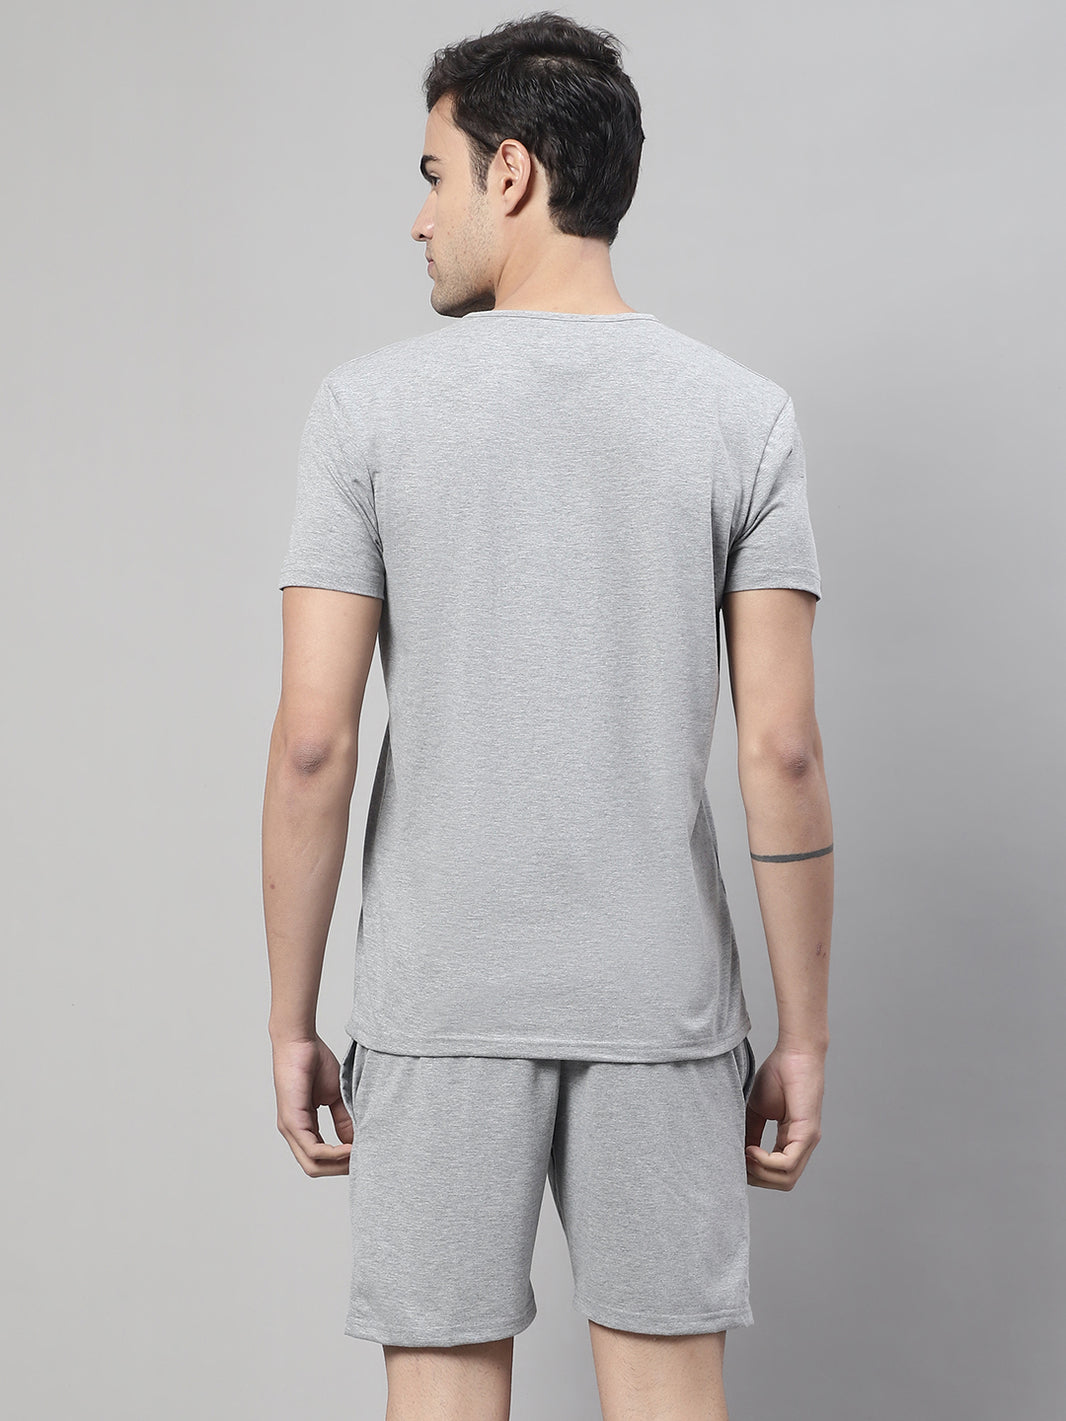 Vimal Jonney Grey Melange Cotton Solid Co-ord Set Tracksuit For Men(Zip On 1 Side Pocket)